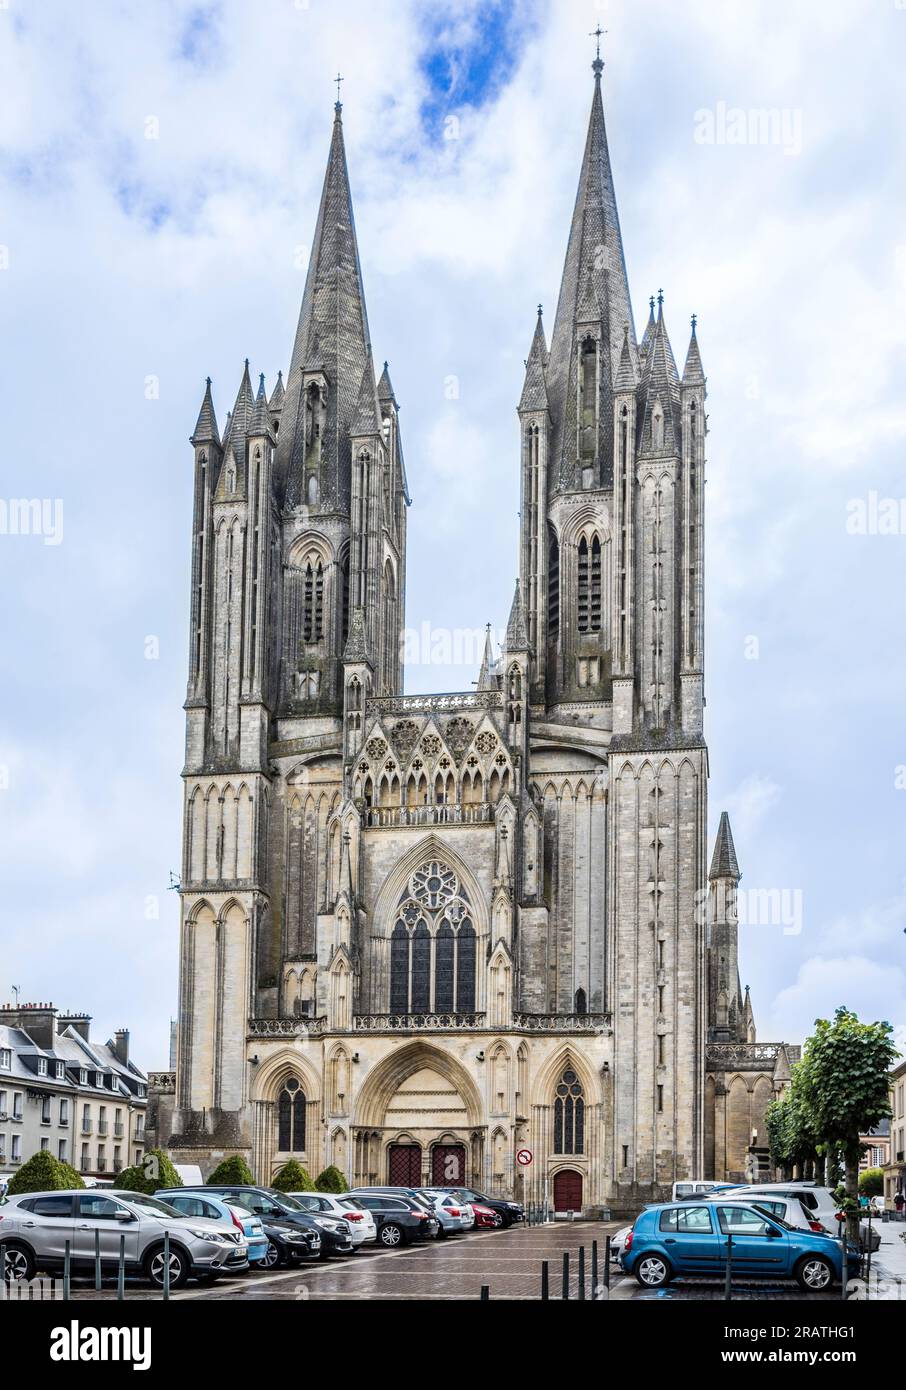 Cattedrale di Coutances, Cathédrale Notre-Dame de Coutances, cattedrale gotica cattolica del XIII secolo nella città di Coutances sulla penisola di Cotentin i Foto Stock